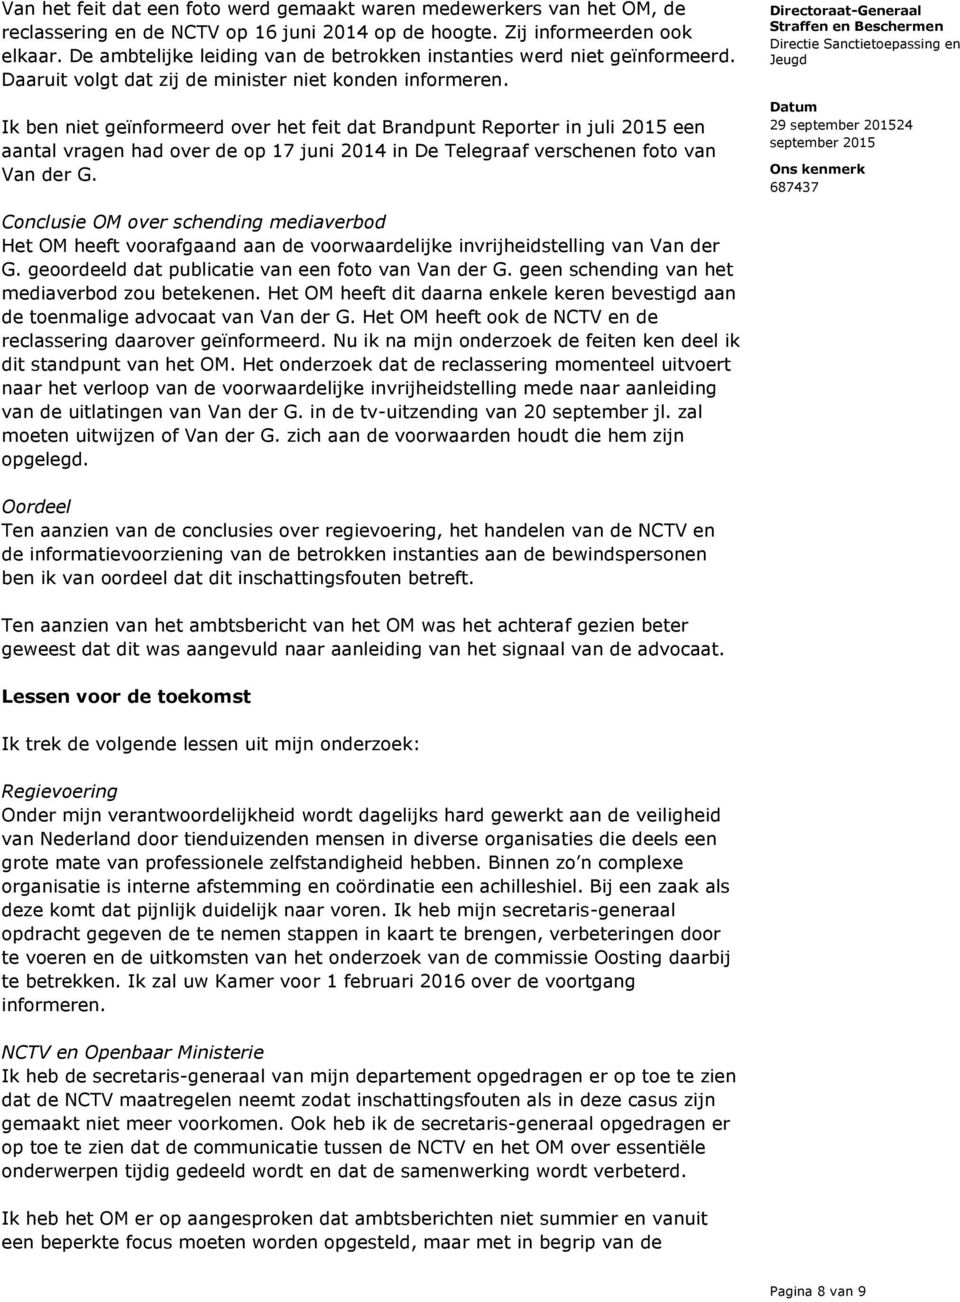 Ik ben niet geïnformeerd over het feit dat Brandpunt Reporter in juli 2015 een aantal vragen had over de op 17 juni 2014 in De Telegraaf verschenen foto van Van der G.